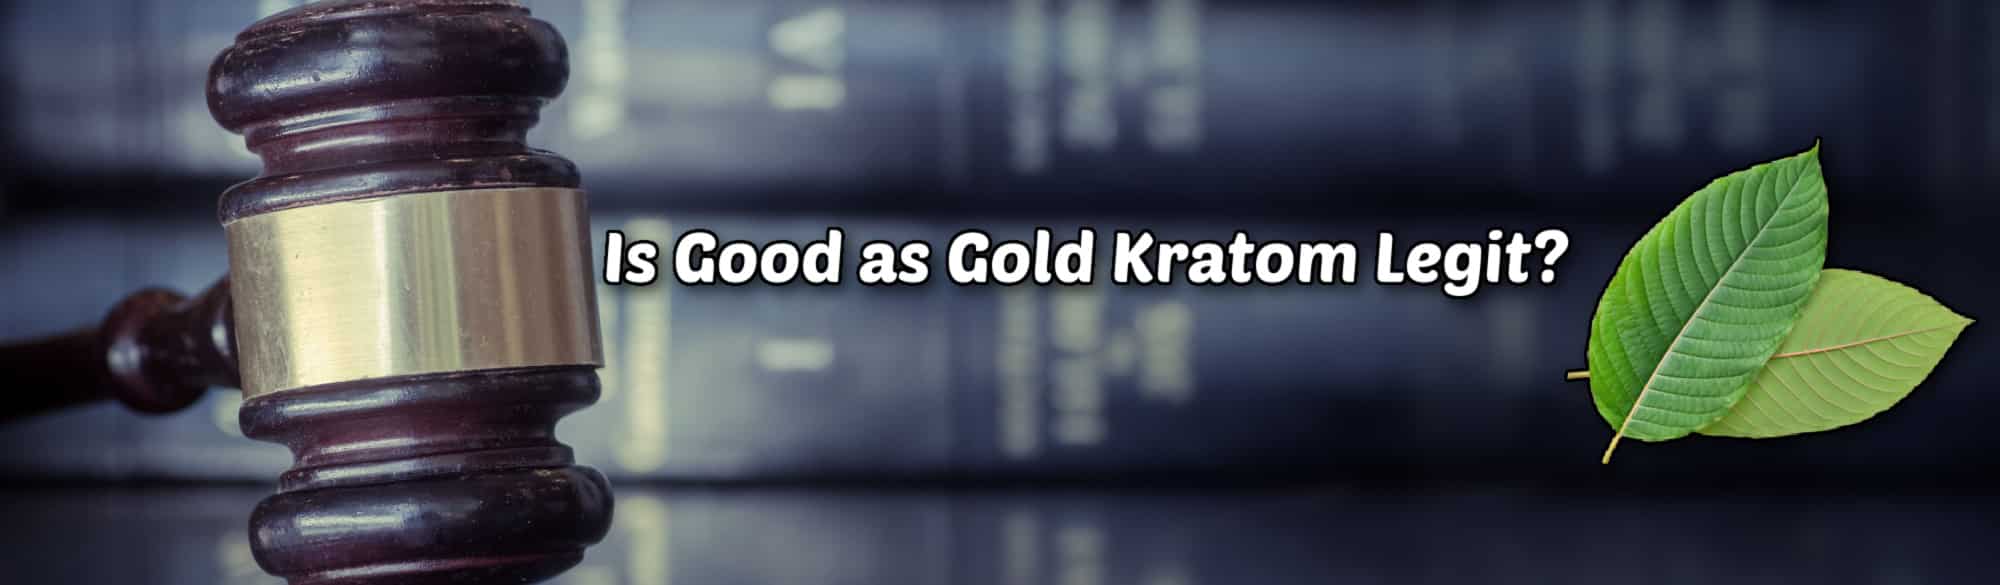 image of is good as gold kratom legit